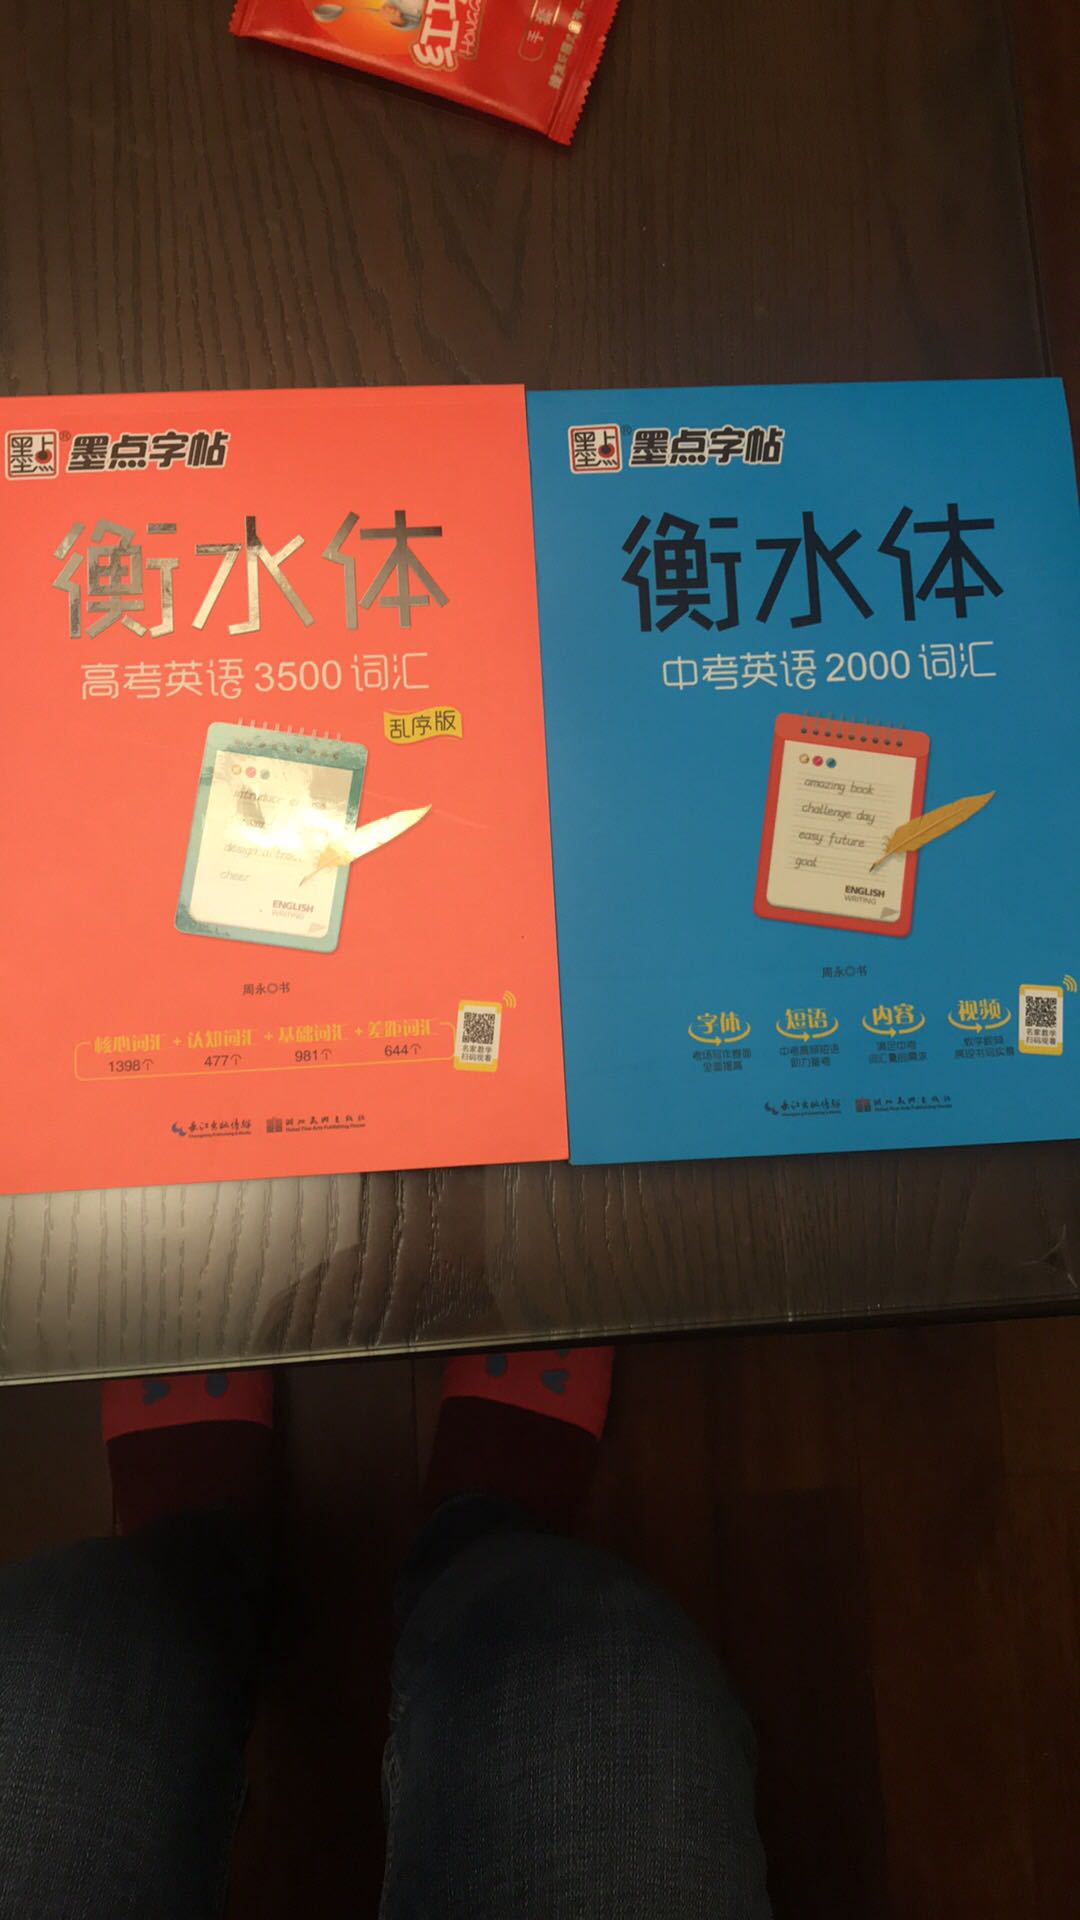 和孩子学习的内容结合紧密，字体是老师非常喜欢的字体，而且每个单词都有汉语解释。我一次买了三本